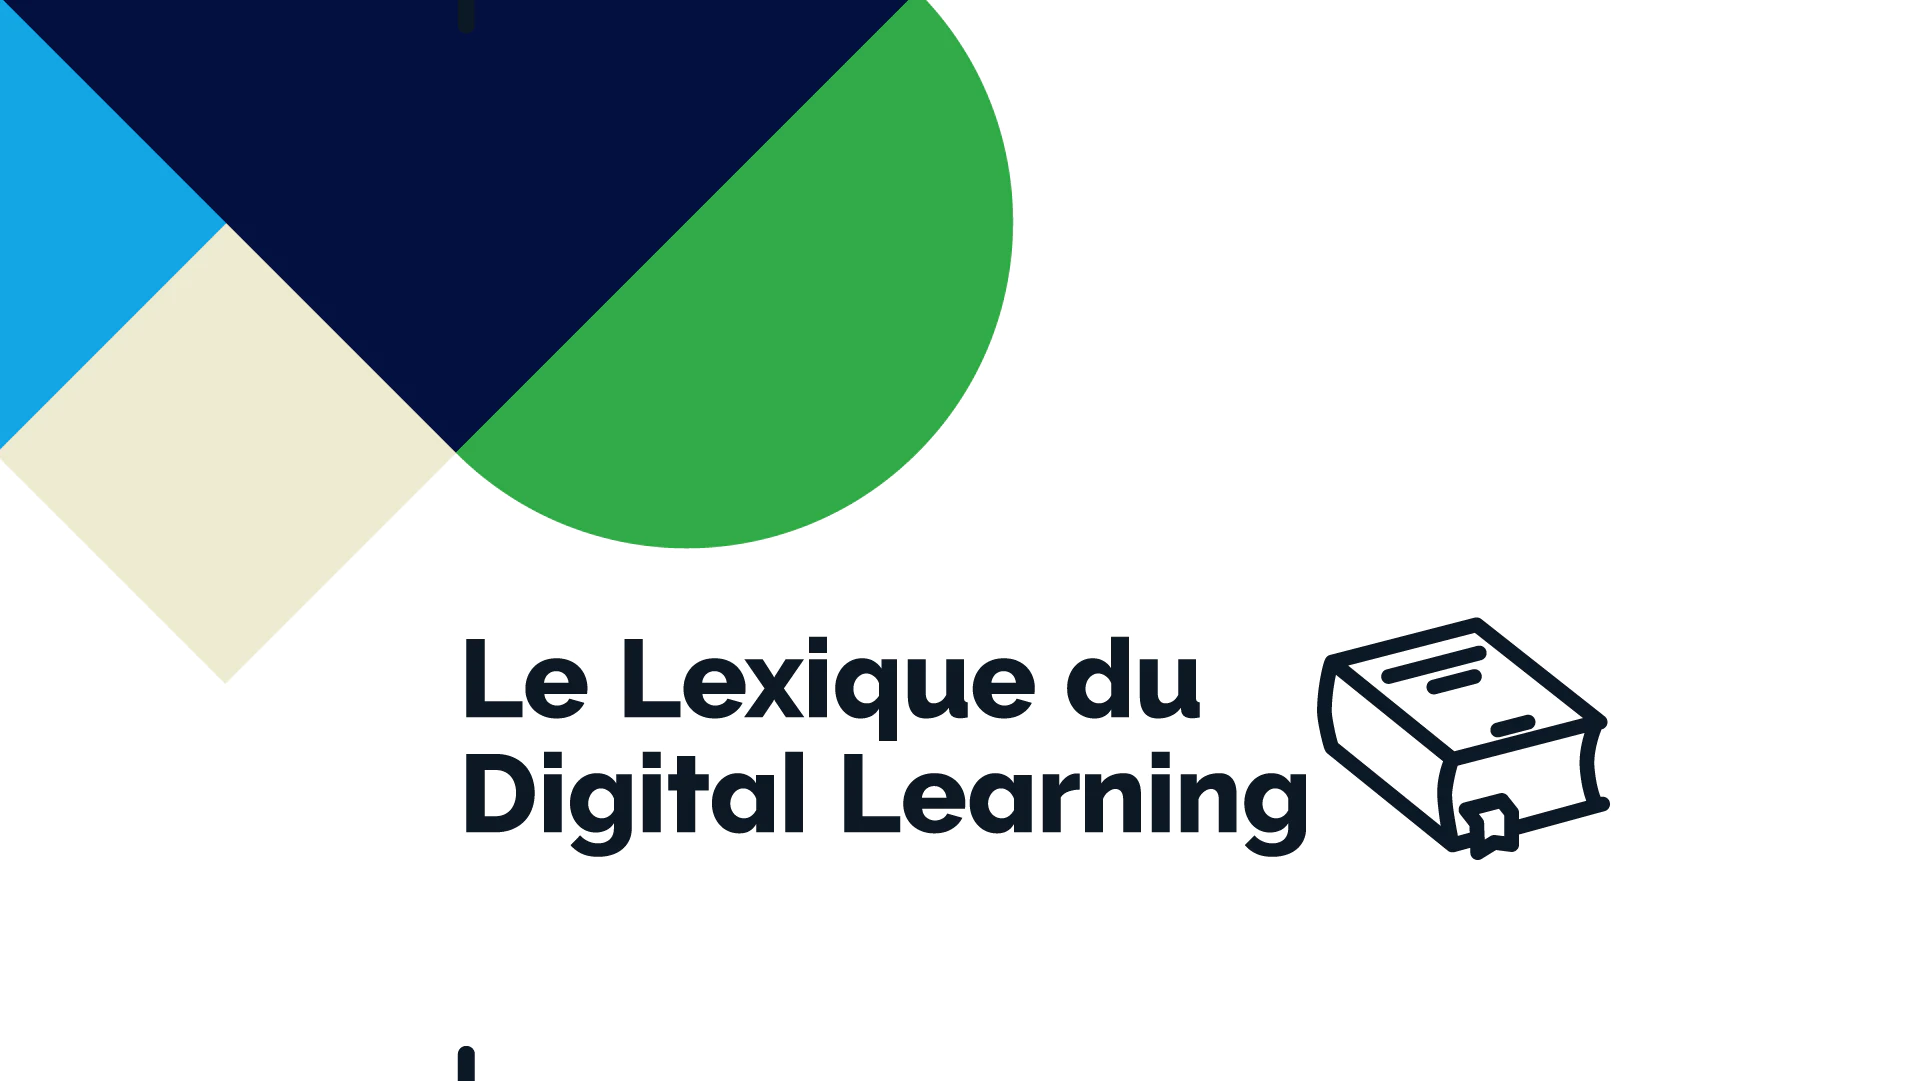 Le lexique du Digital Learning